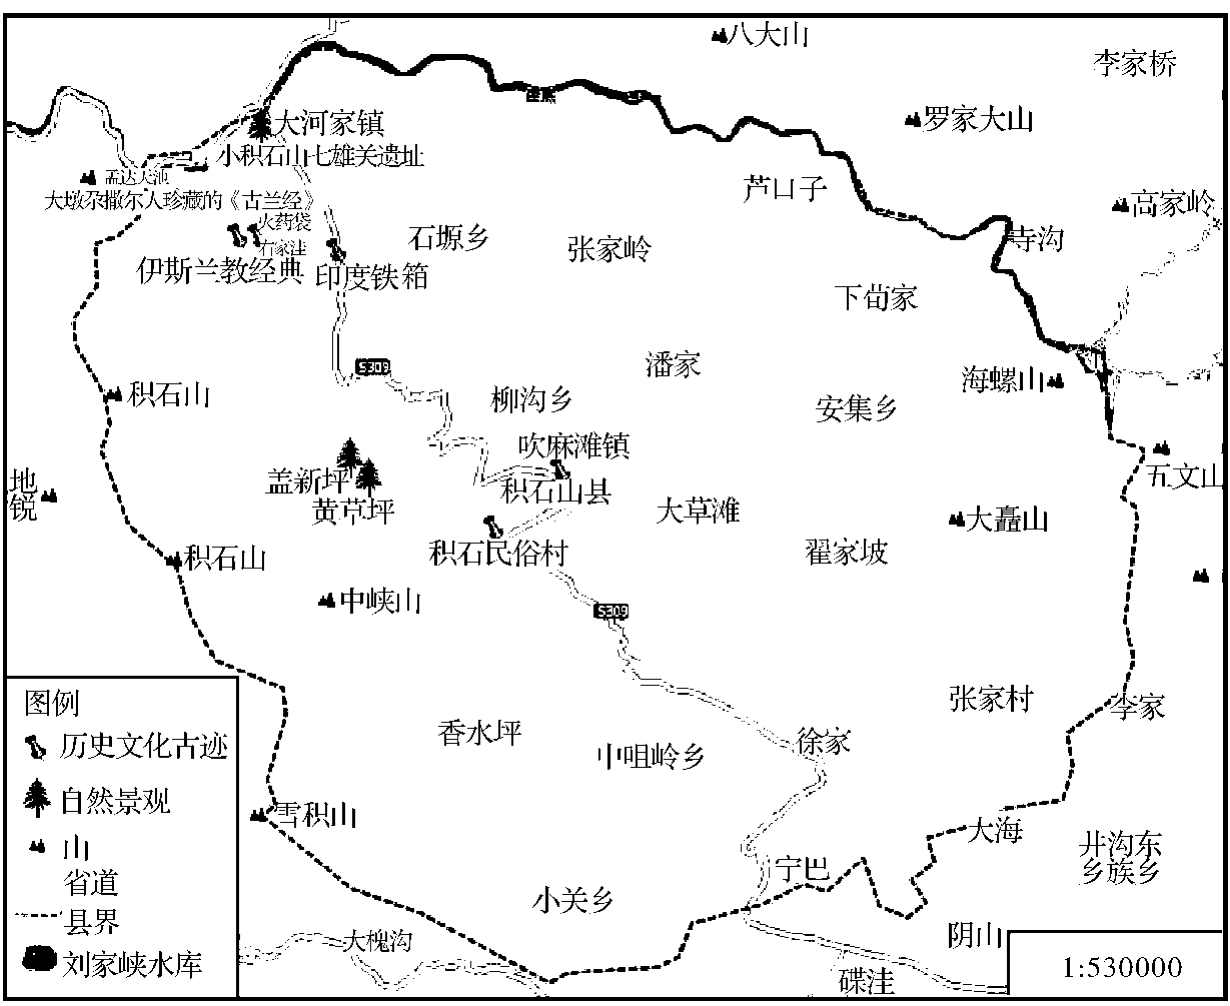 积石山县的马厂文化类型现主要发现在上山遗址,三坪遗址,坡头顶遗址